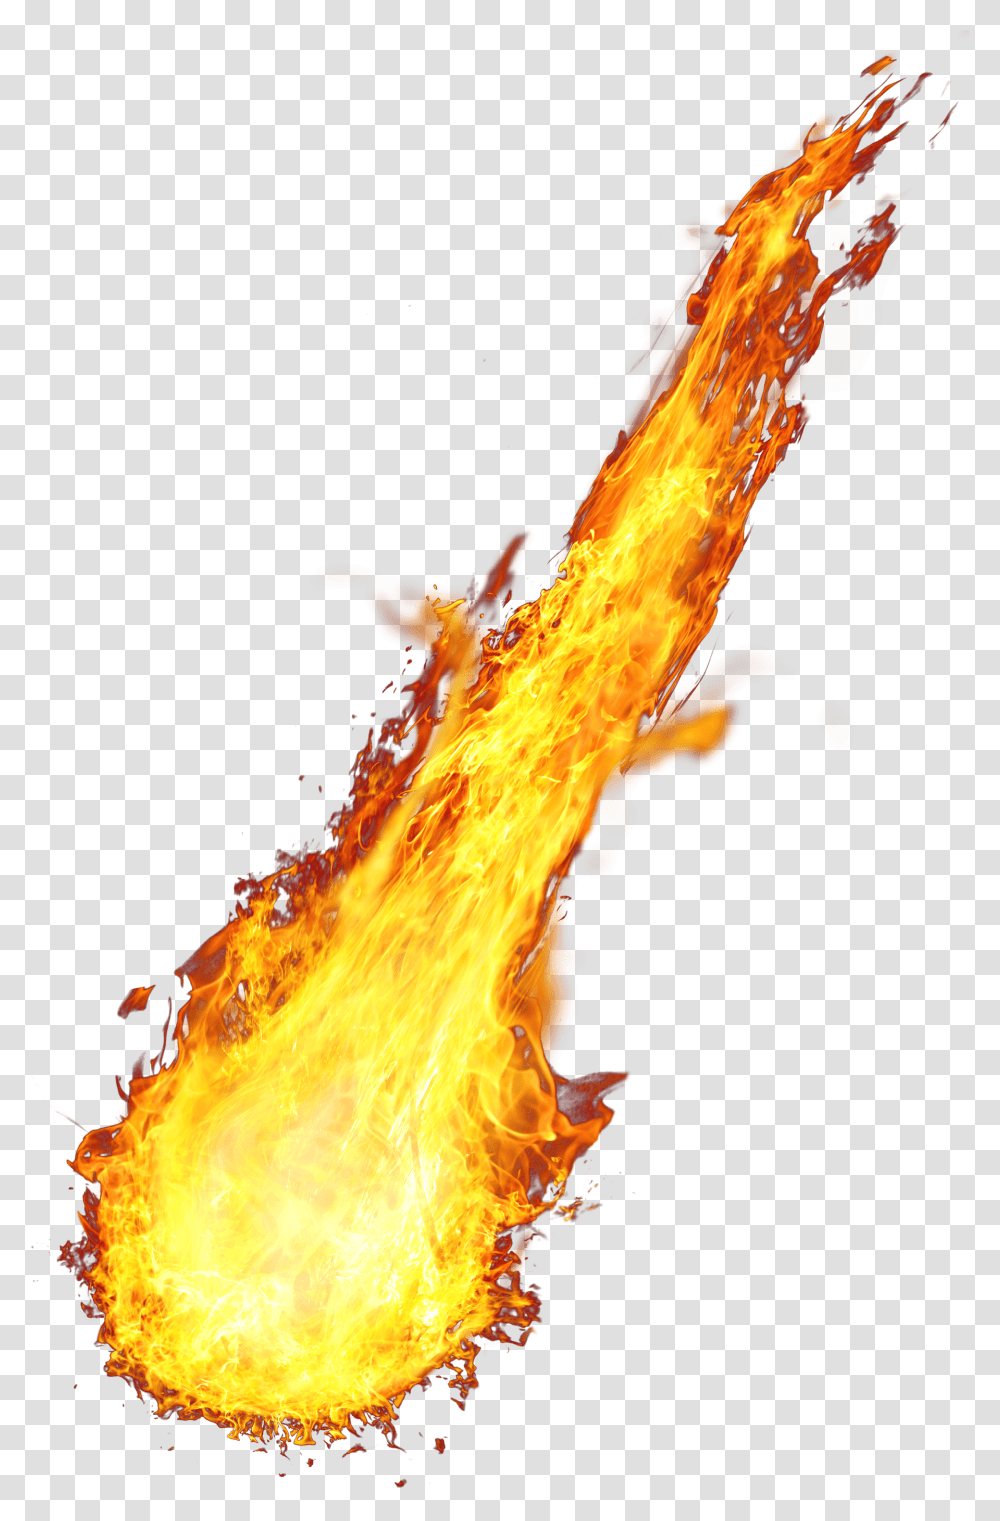 Download Fire Image Hq Dragon Fire, Bonfire, Flame Transparent Png